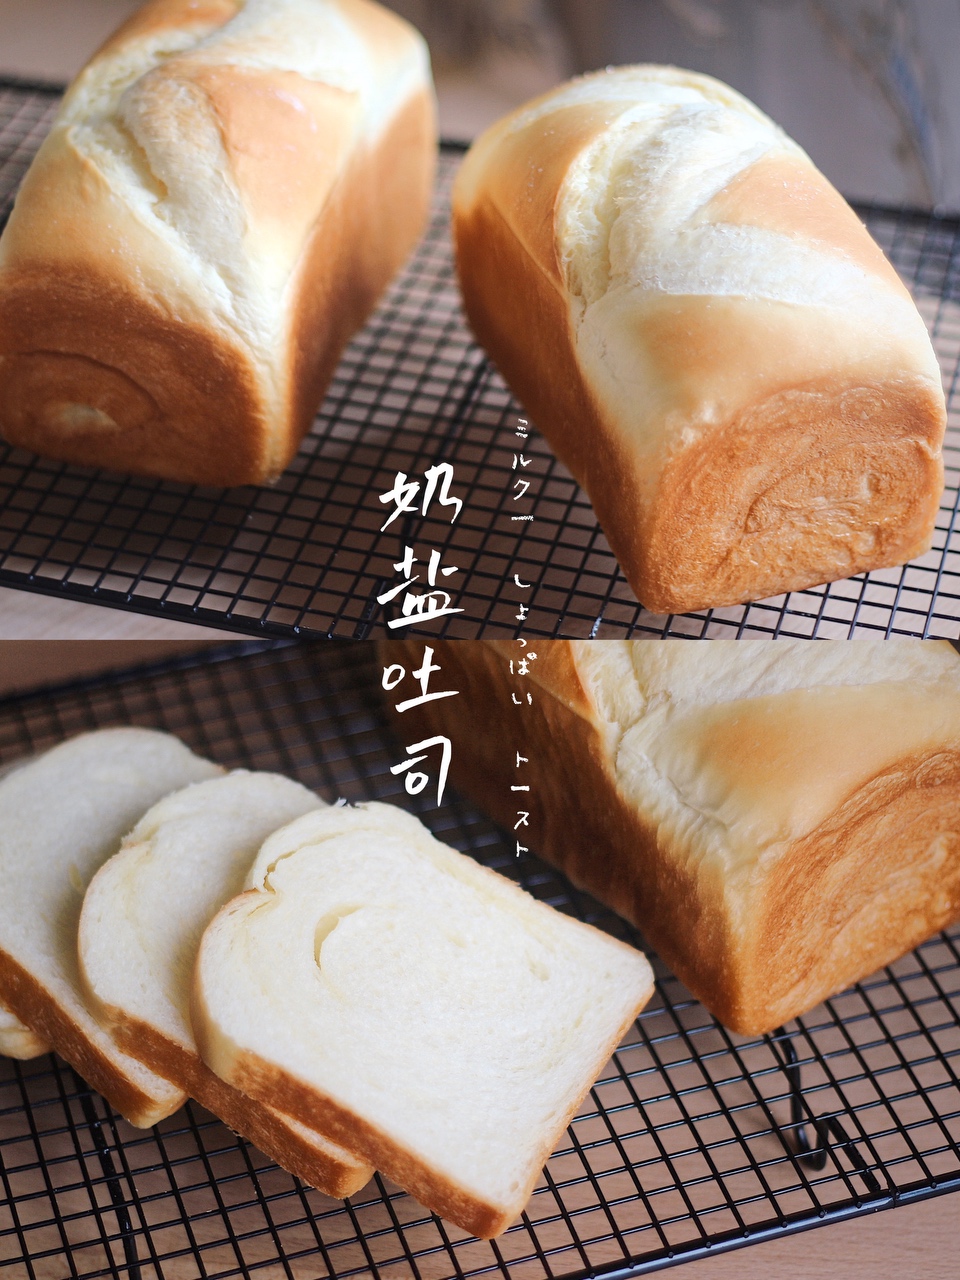 烘焙面包的封面